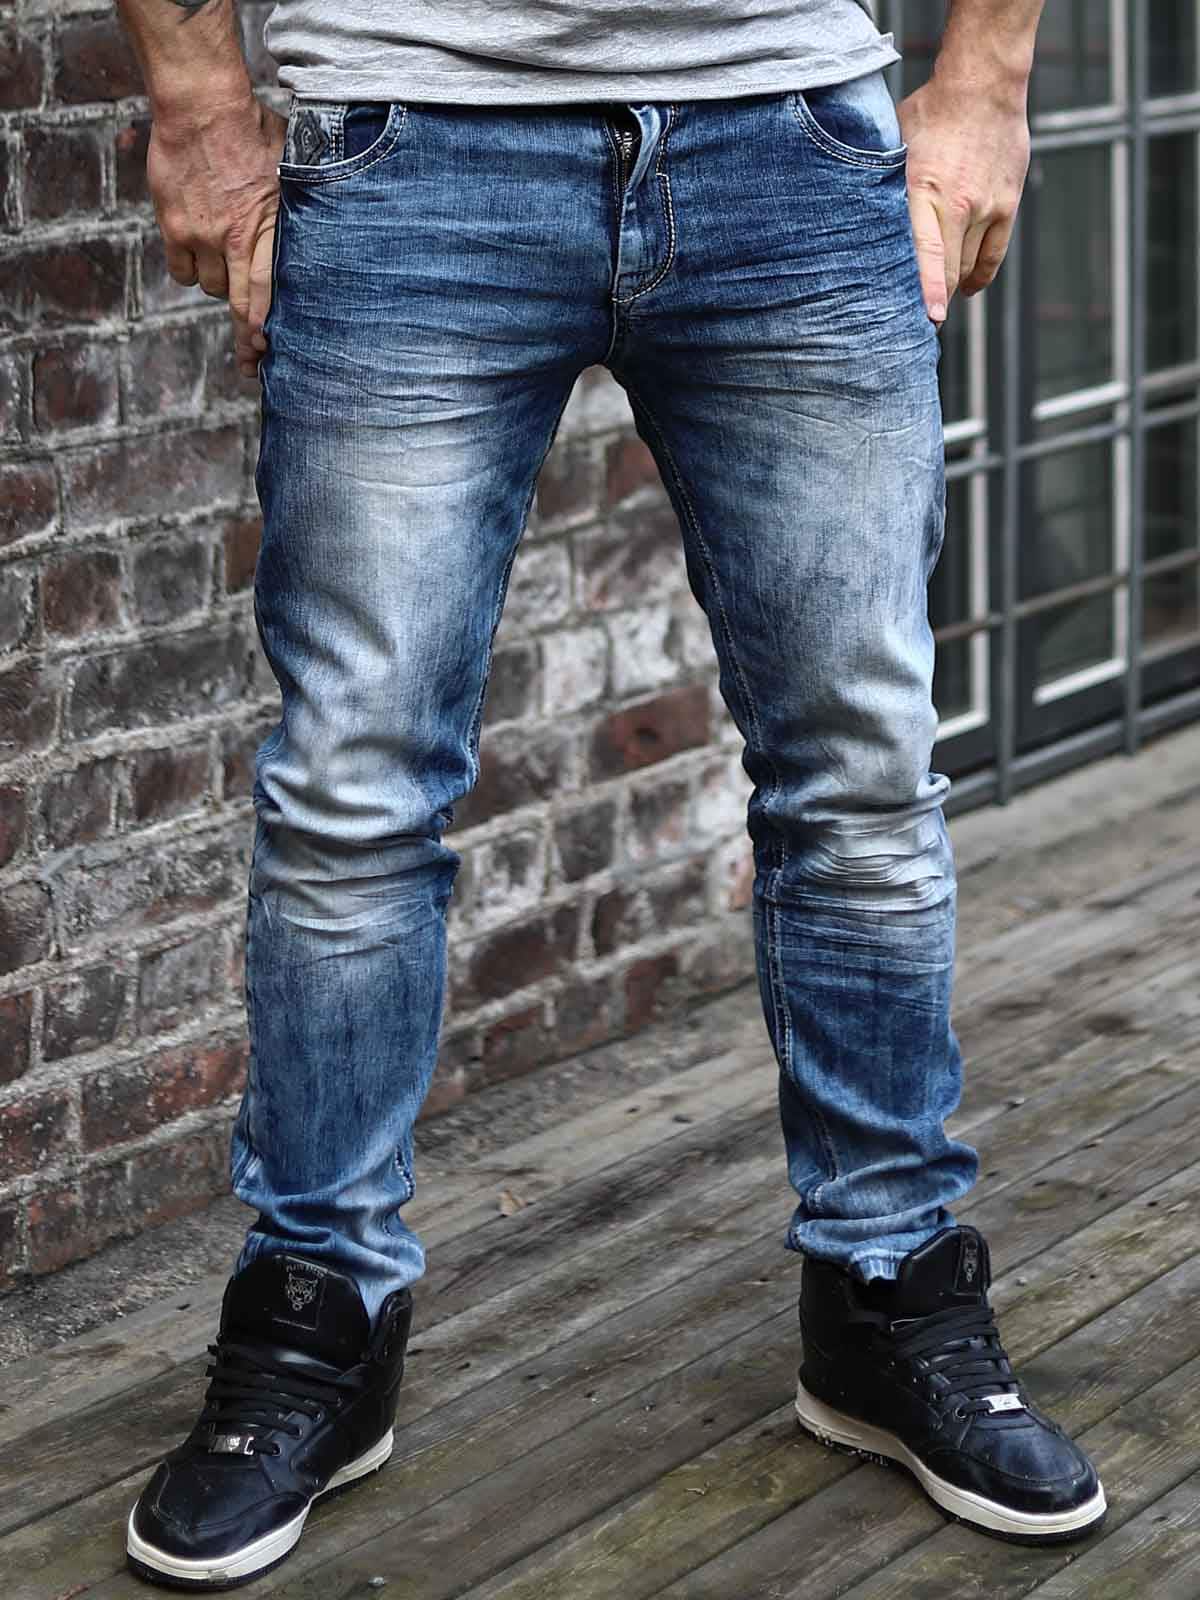 haleth jeans Blue outdoor2.jpg